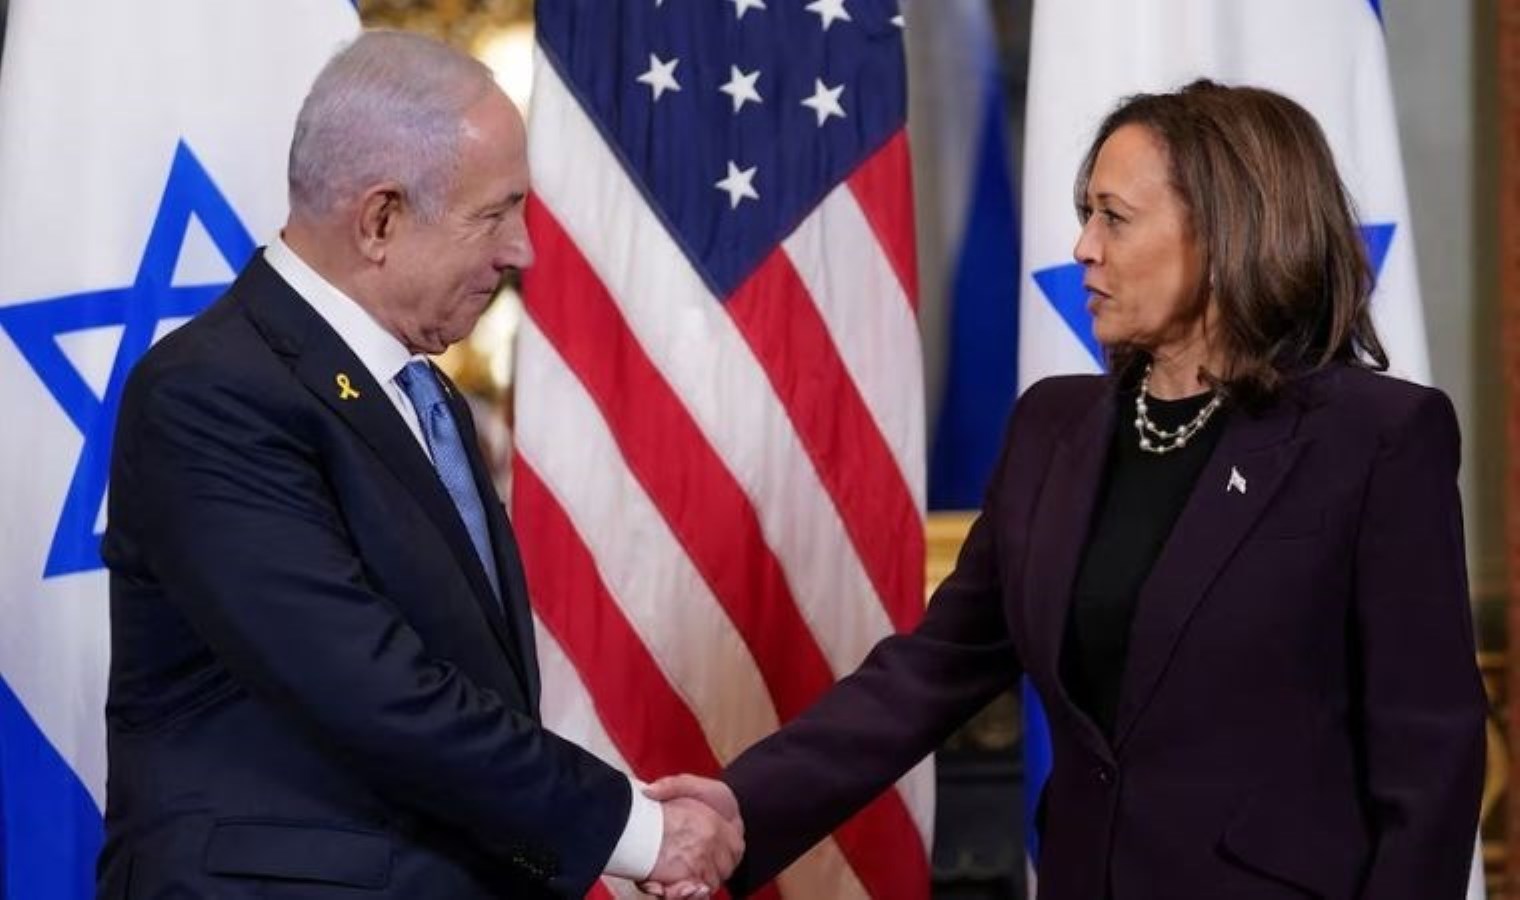 Kamala Harris’ten Netanyahu’ya sert uyarı: “Gazze’deki insani krize sessiz kalmayacağım”